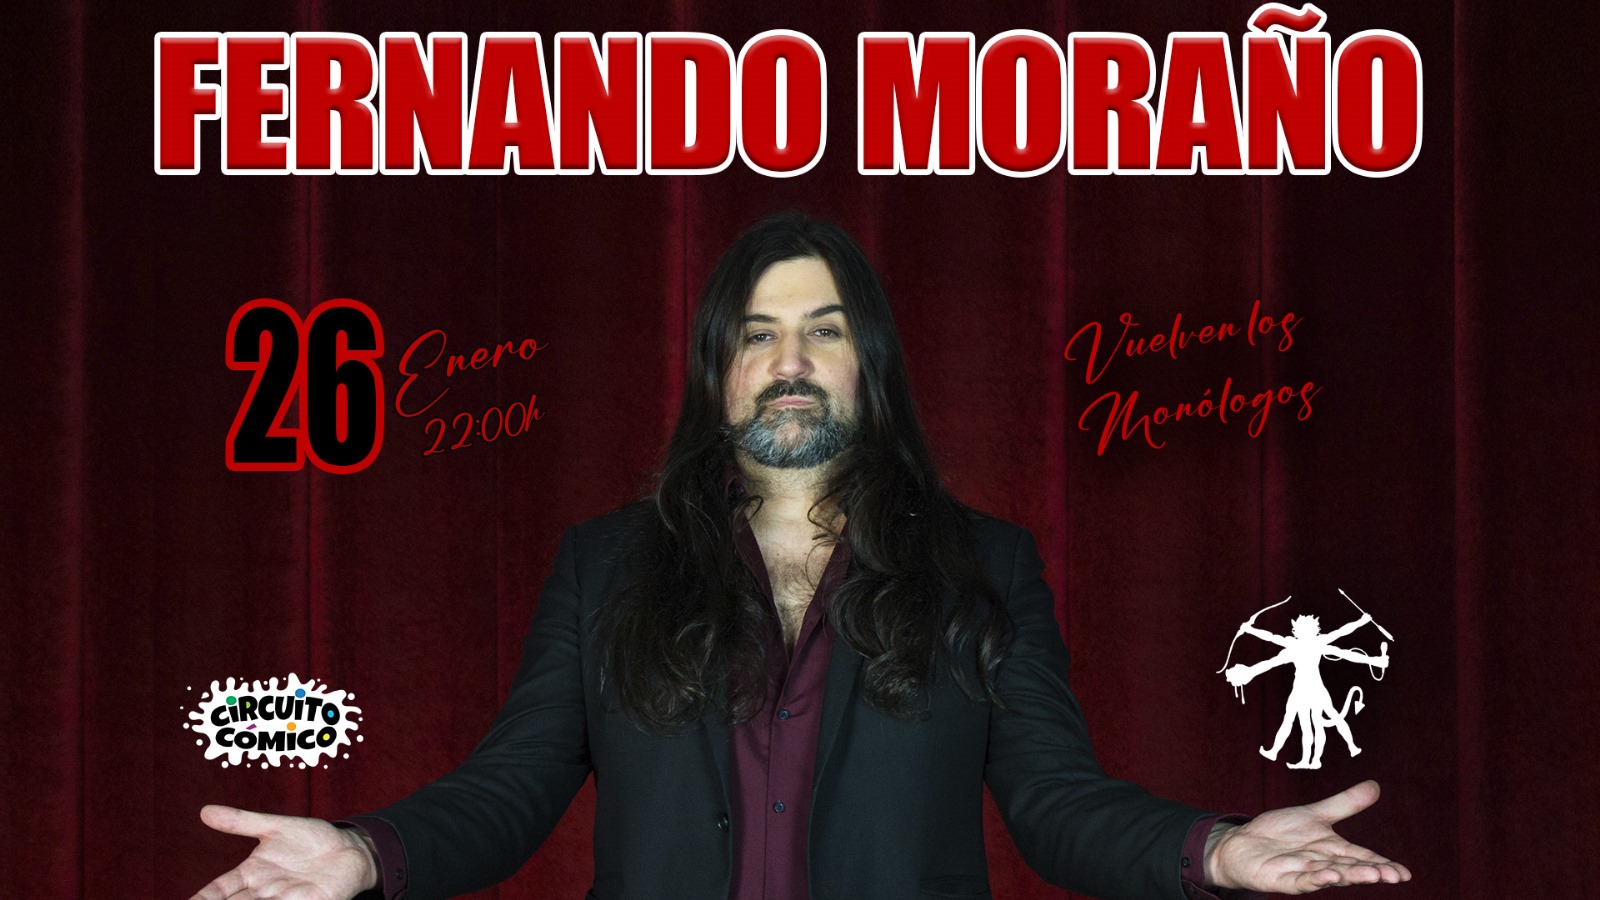 Vuelven los monólogos: FERNANDO MORAÑO en Madrid - Mutick